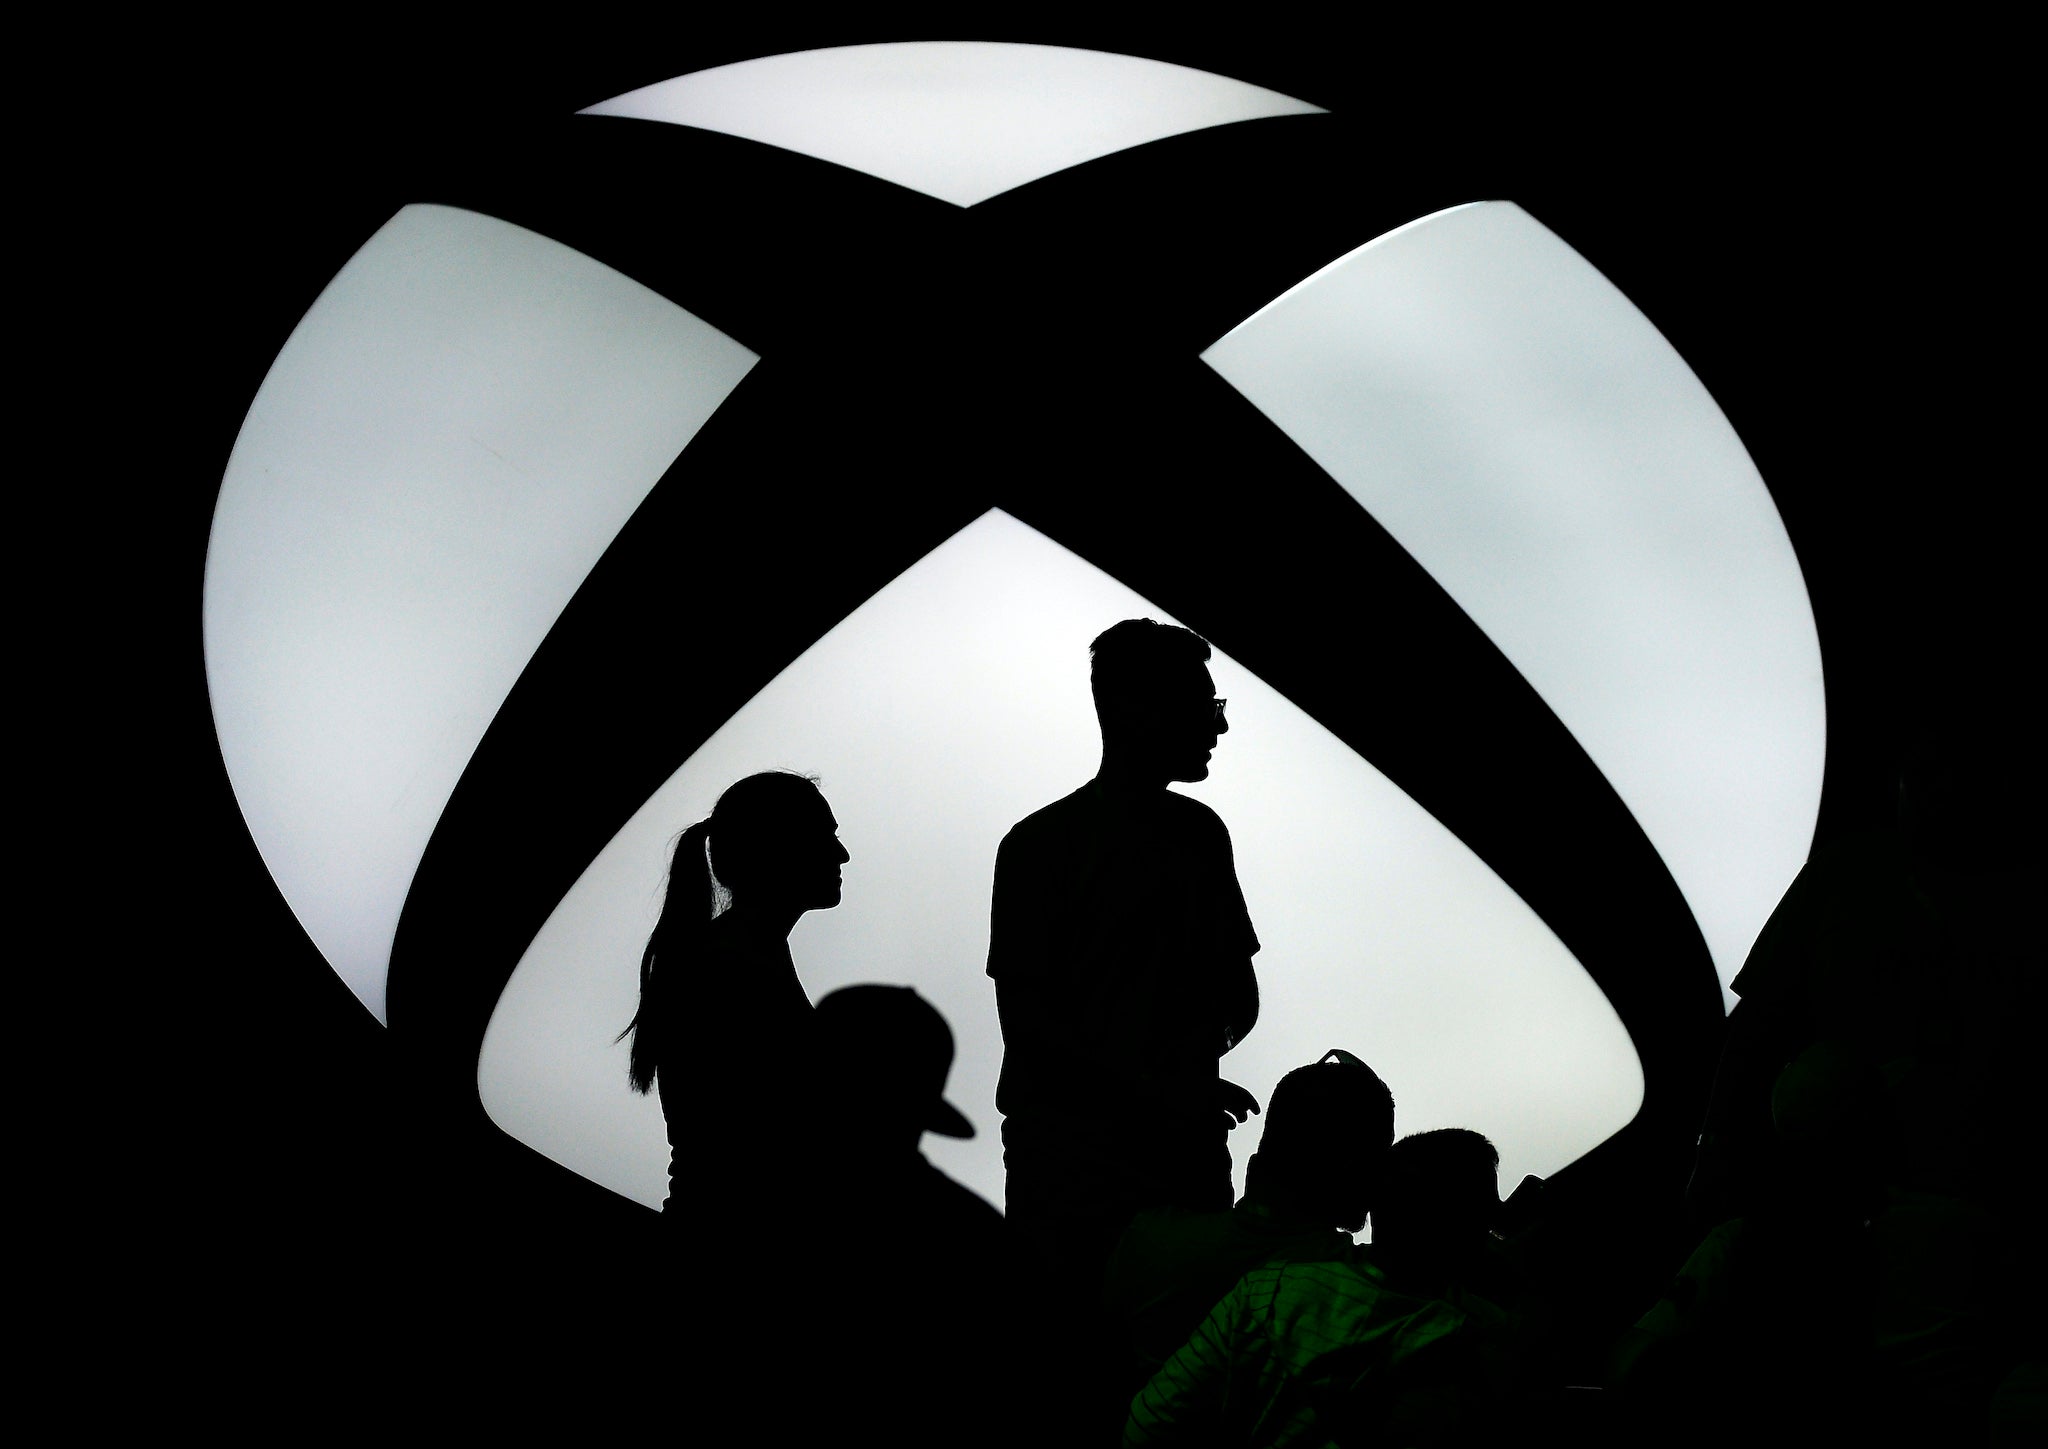 El próximo mes, Microsoft pondrá a la venta su consola Xbox Series X